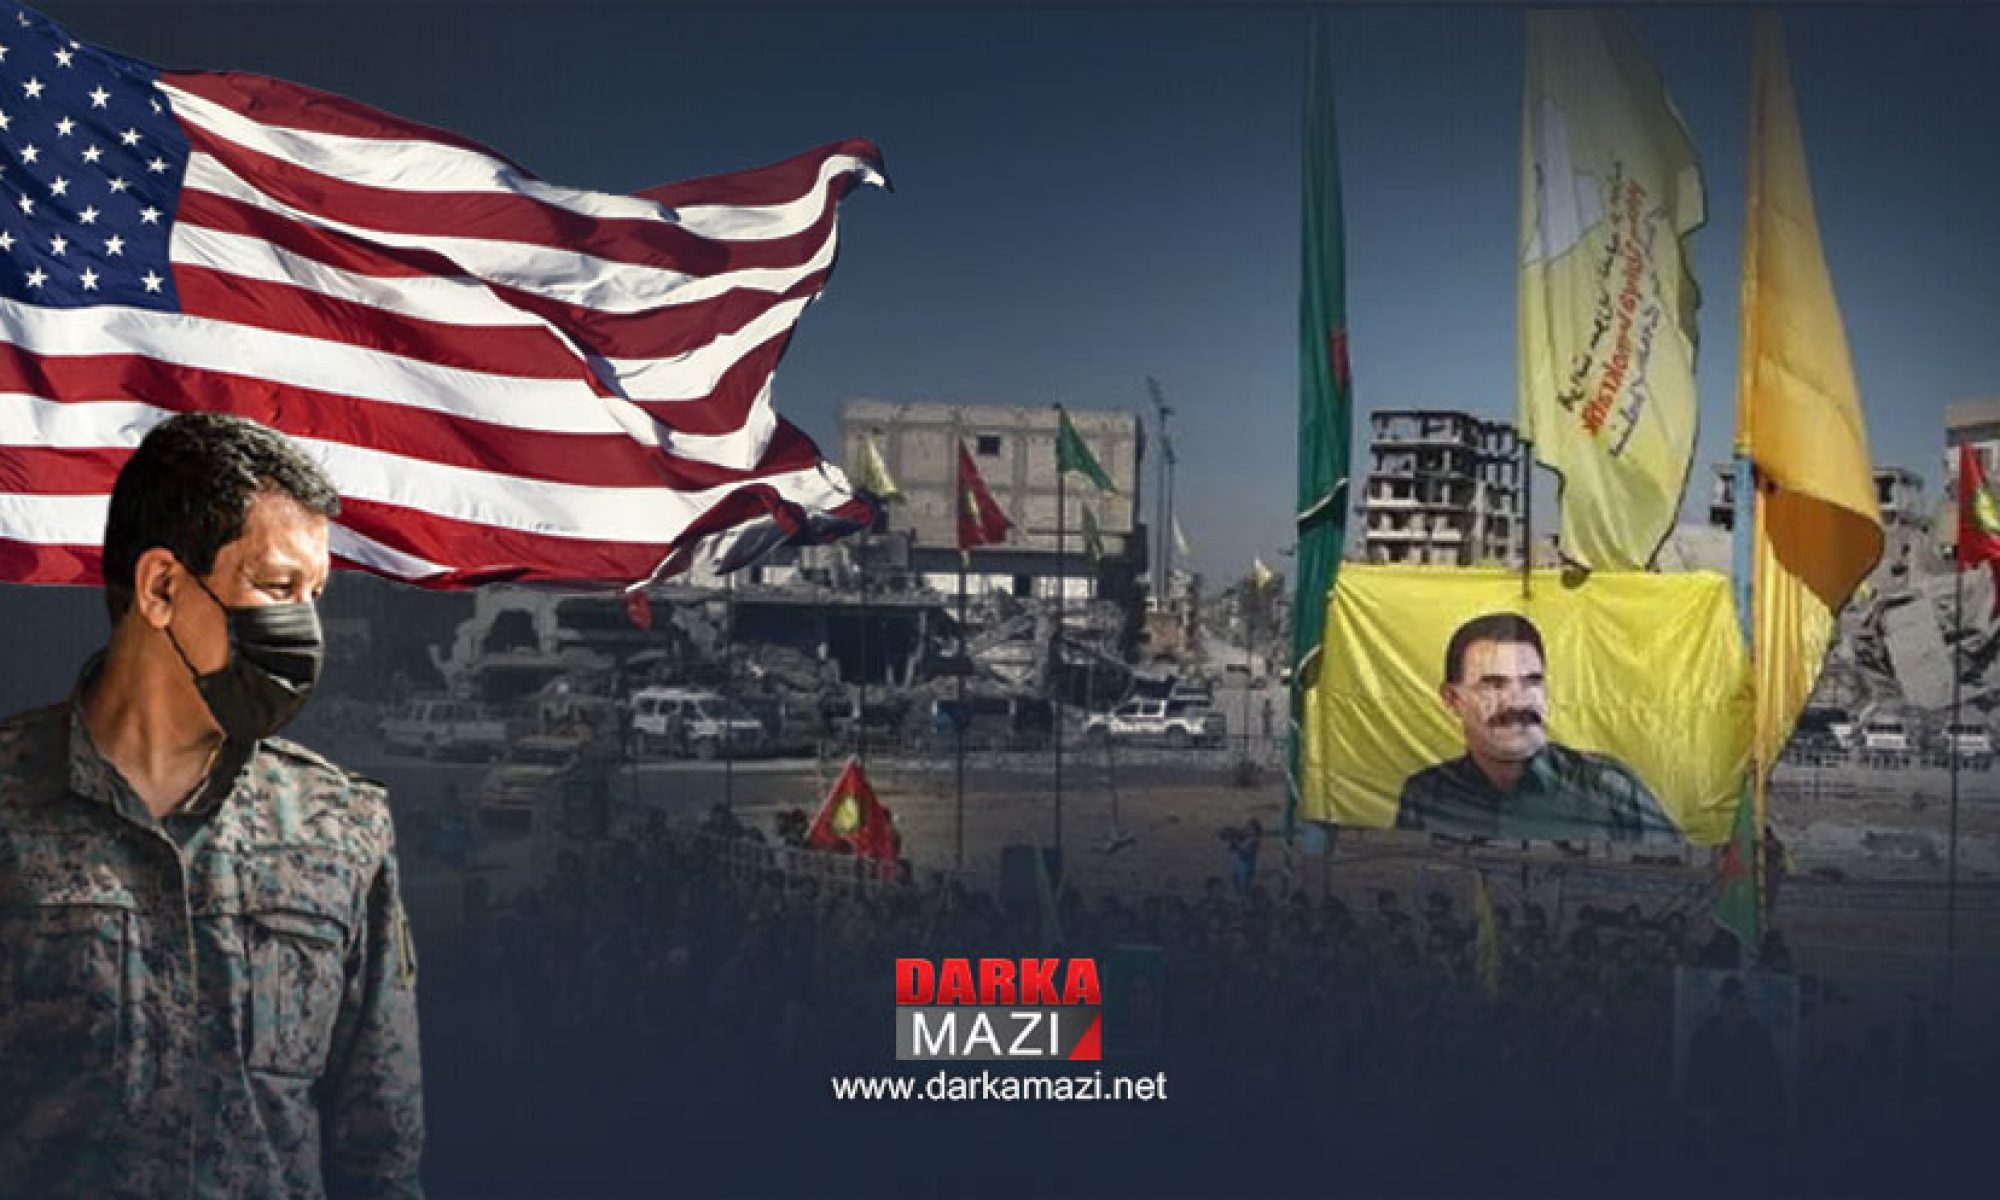 El Arabi 21: Amerika Rojava’da Öcalan fotoğrafları ve PKK flamalarının kaldırılmasını istedi